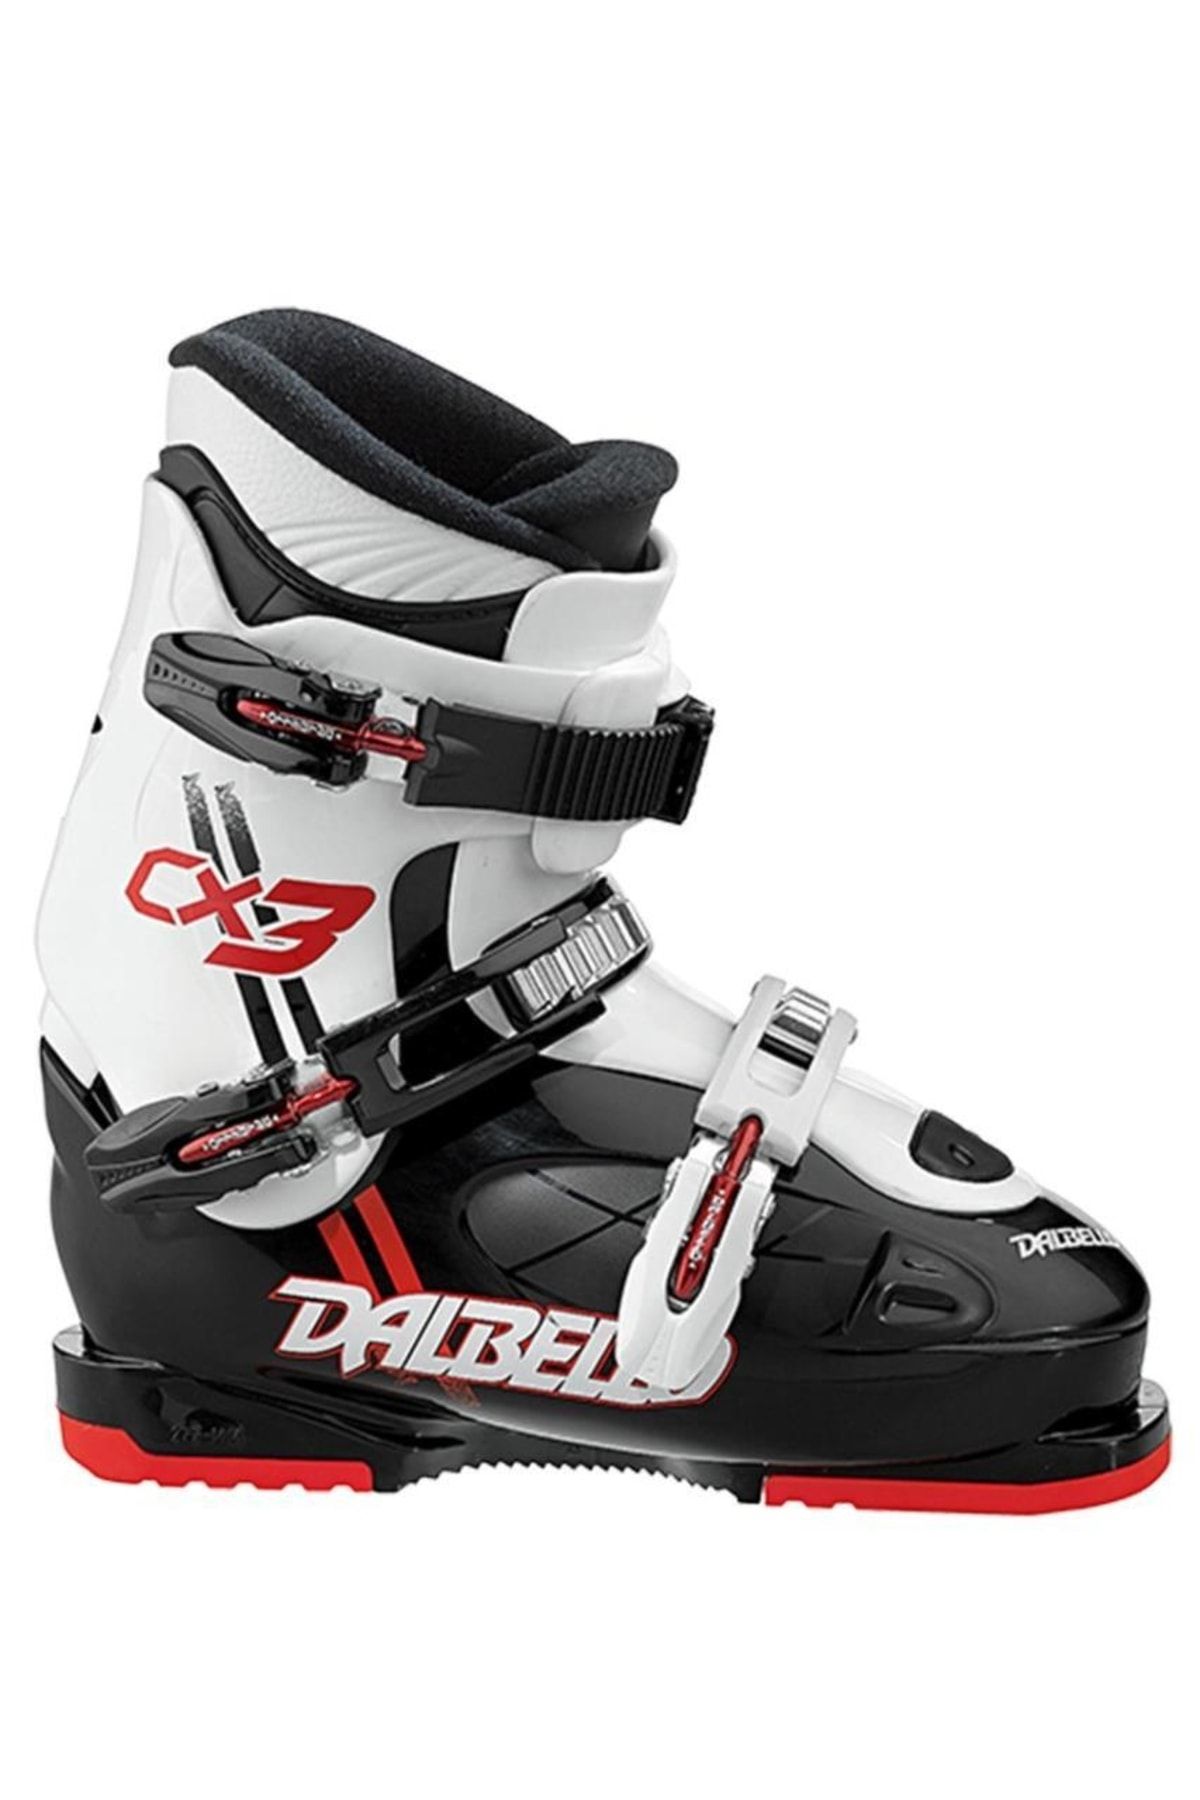 Dalbello Cx 3 Jr Kayak Ayakkabısı